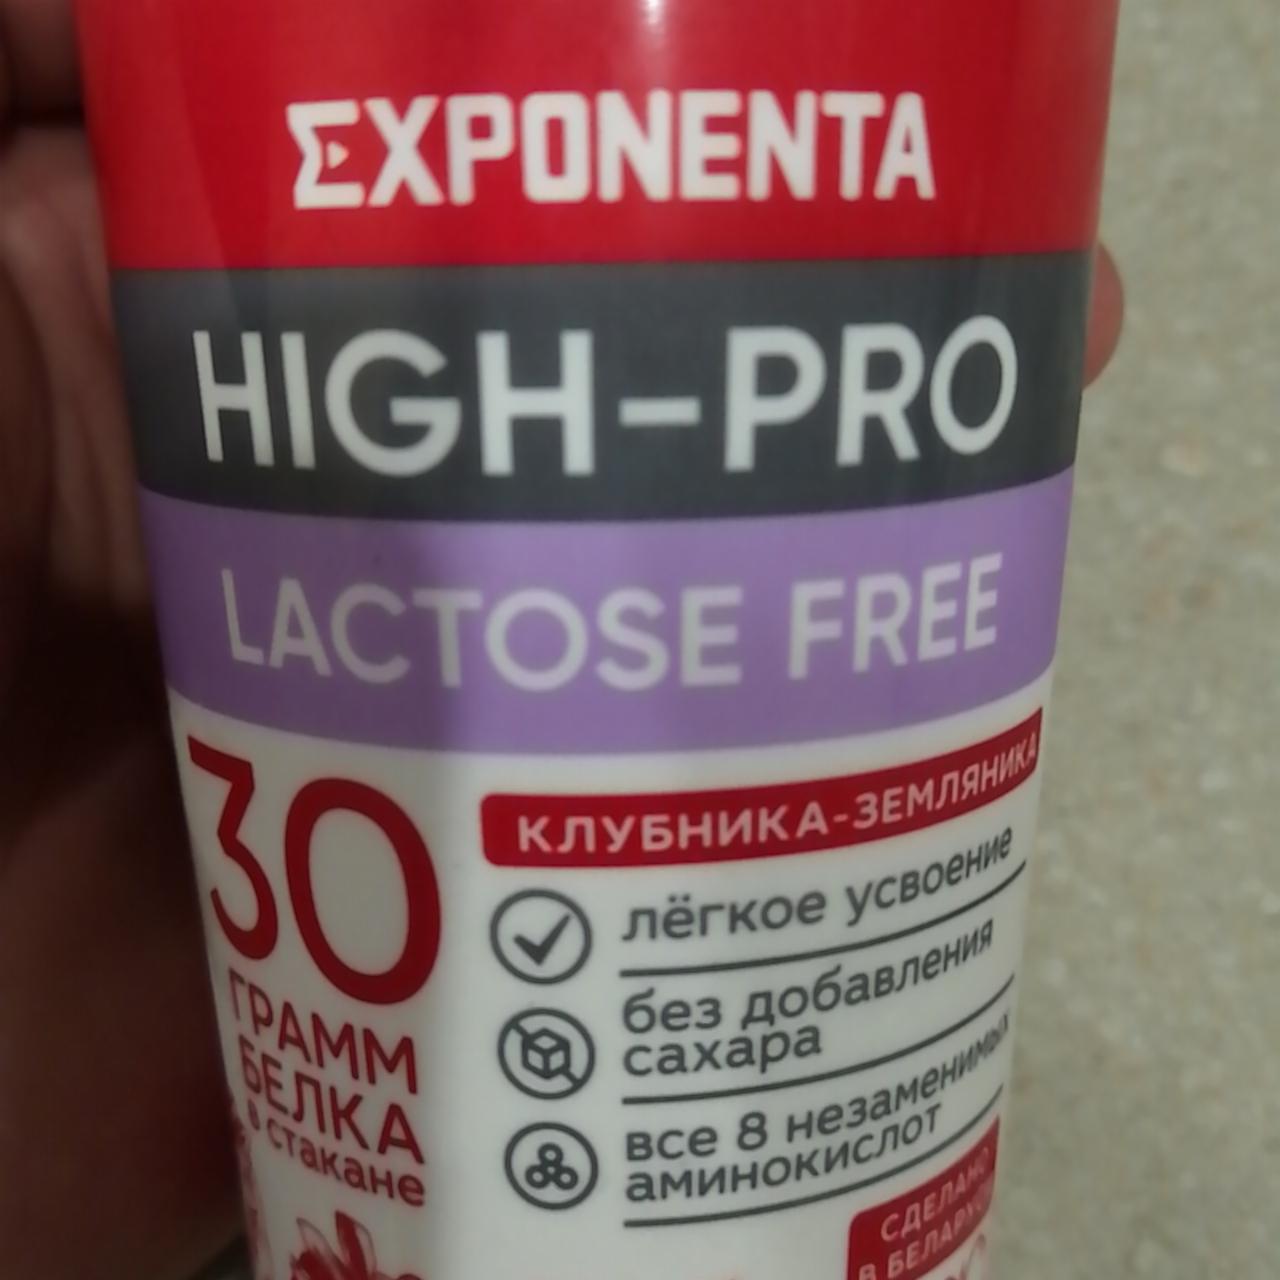 Фото - Напиток кисломолочный клубника-земляника Lactose-Free Exponenta High-Pro